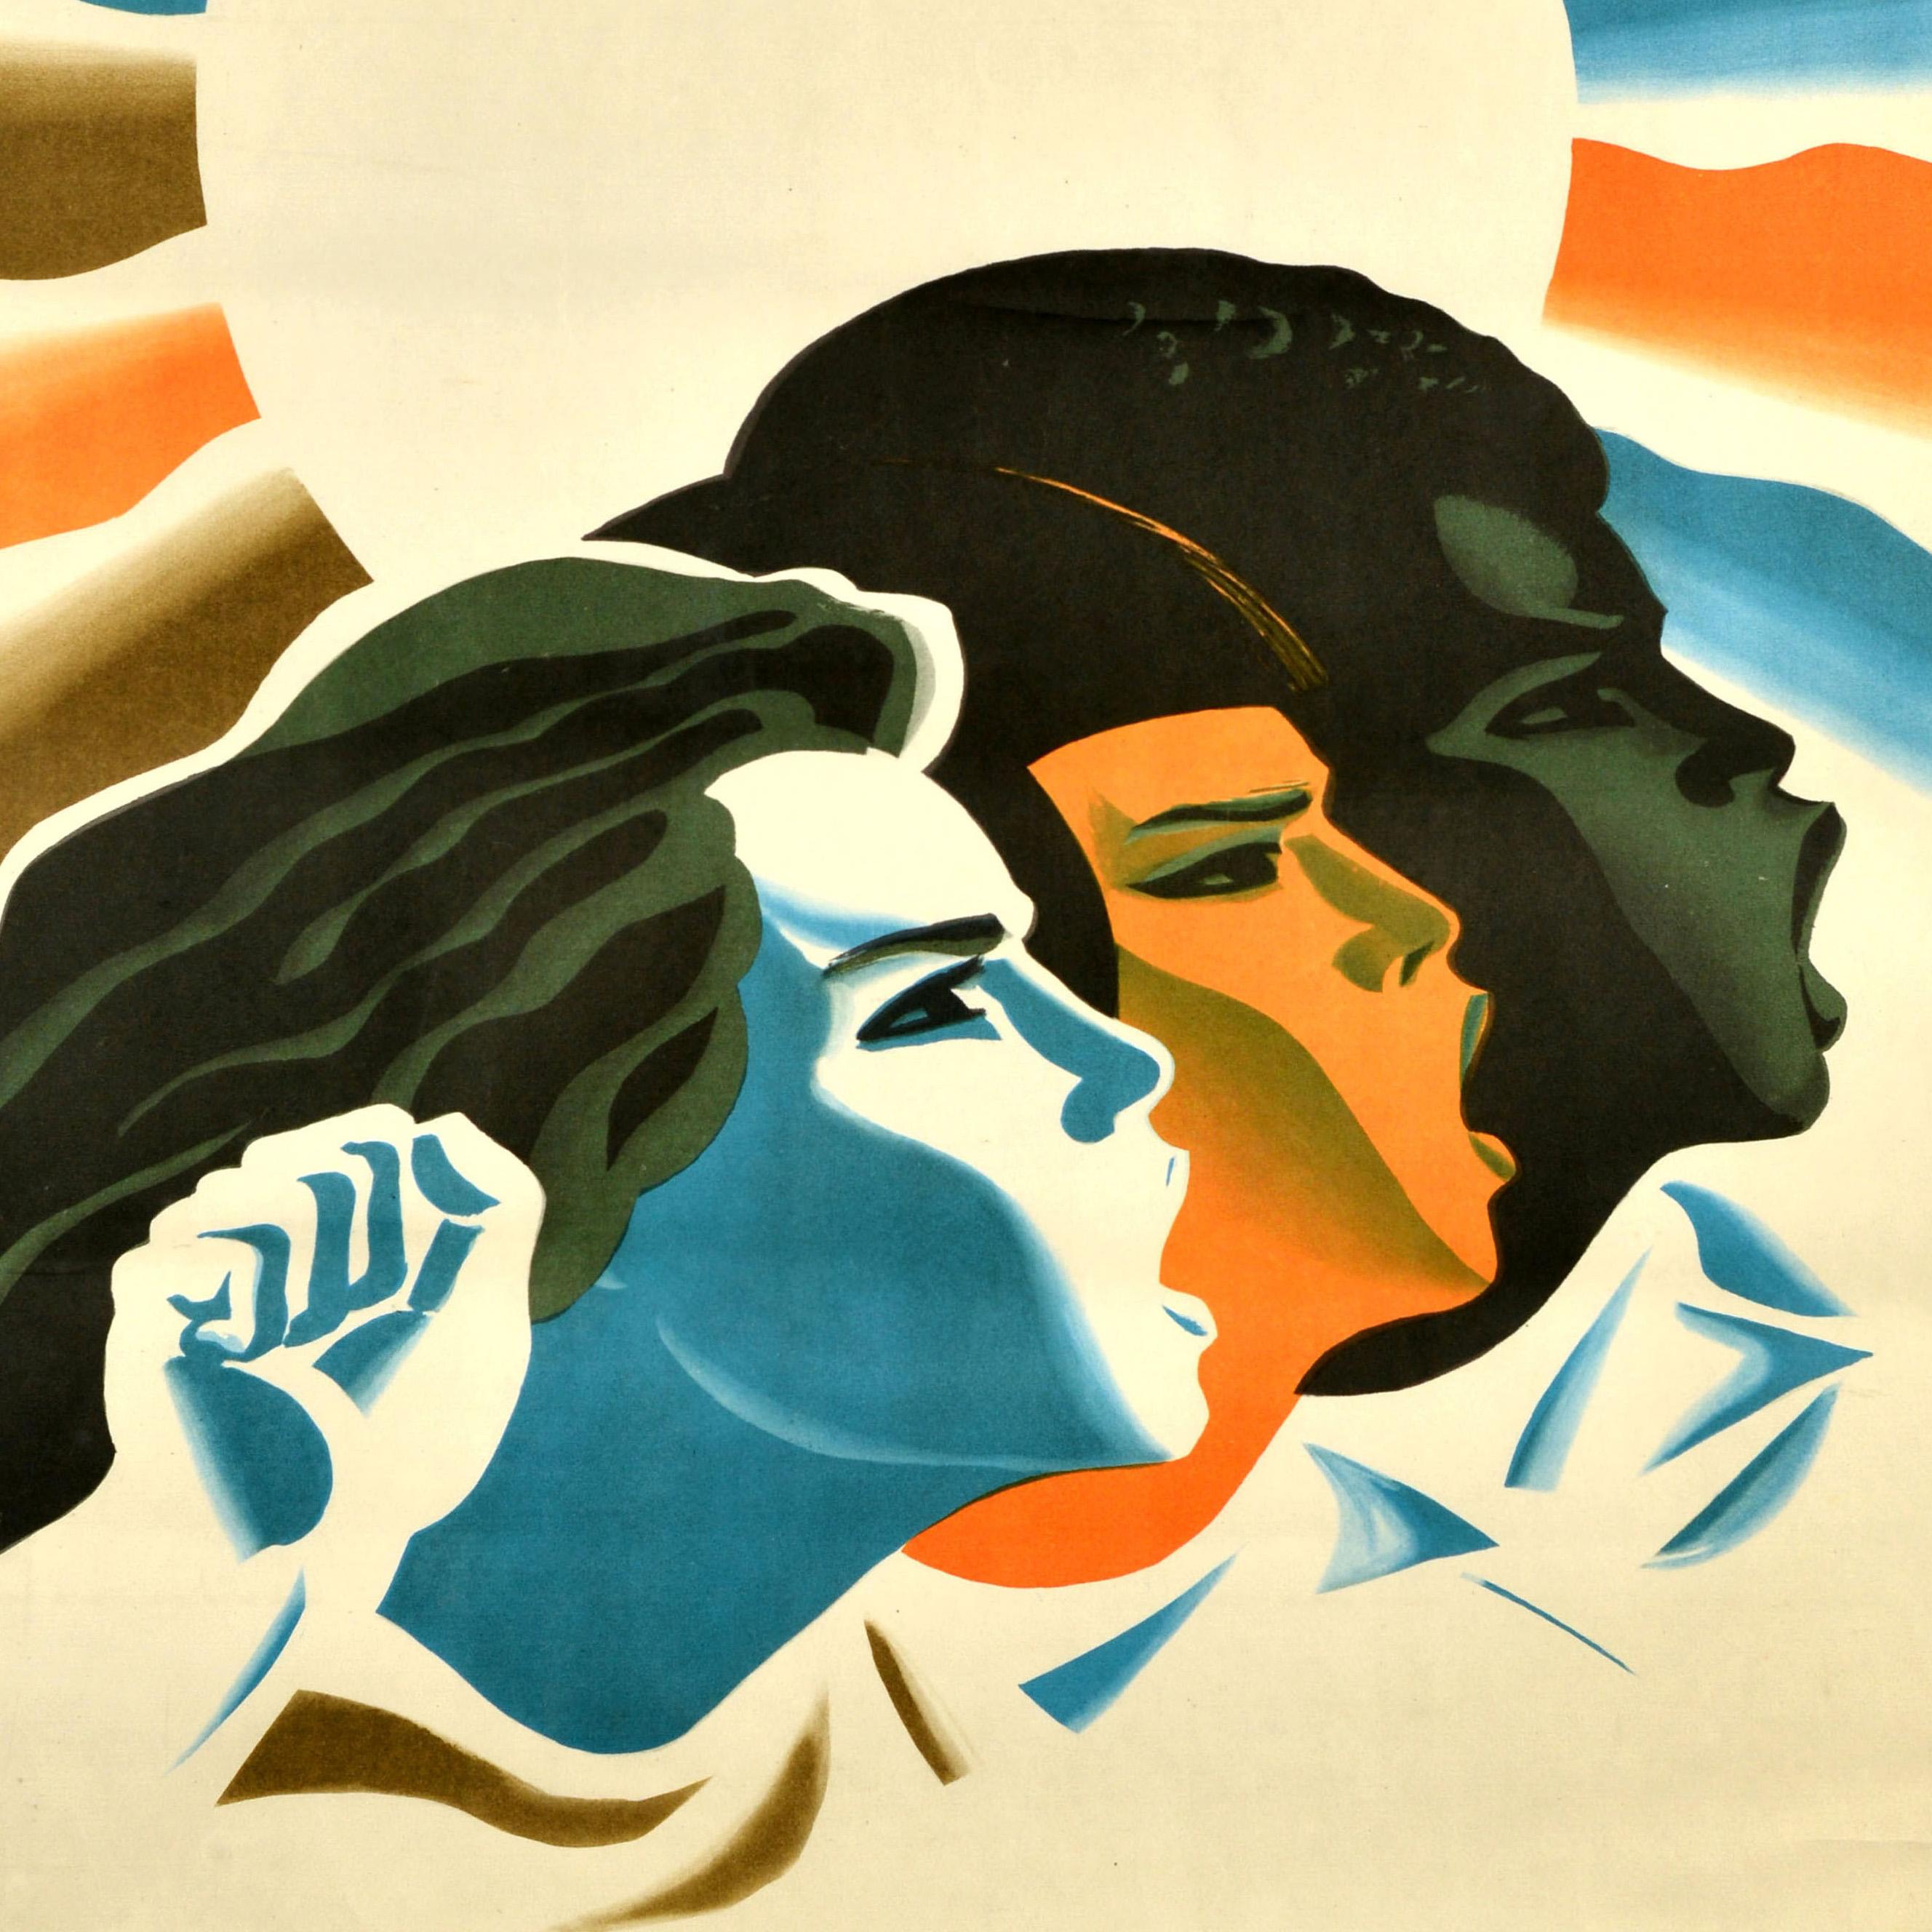 Original sowjetisches Propagandaplakat - Für die Solidarität der Frauen der Welt / За солидарность женщин мира! - mit einem Bild von drei Frauen aus verschiedenen Ländern, die vor der von bunten Strahlen umgebenen Sonne für die Rechte und die